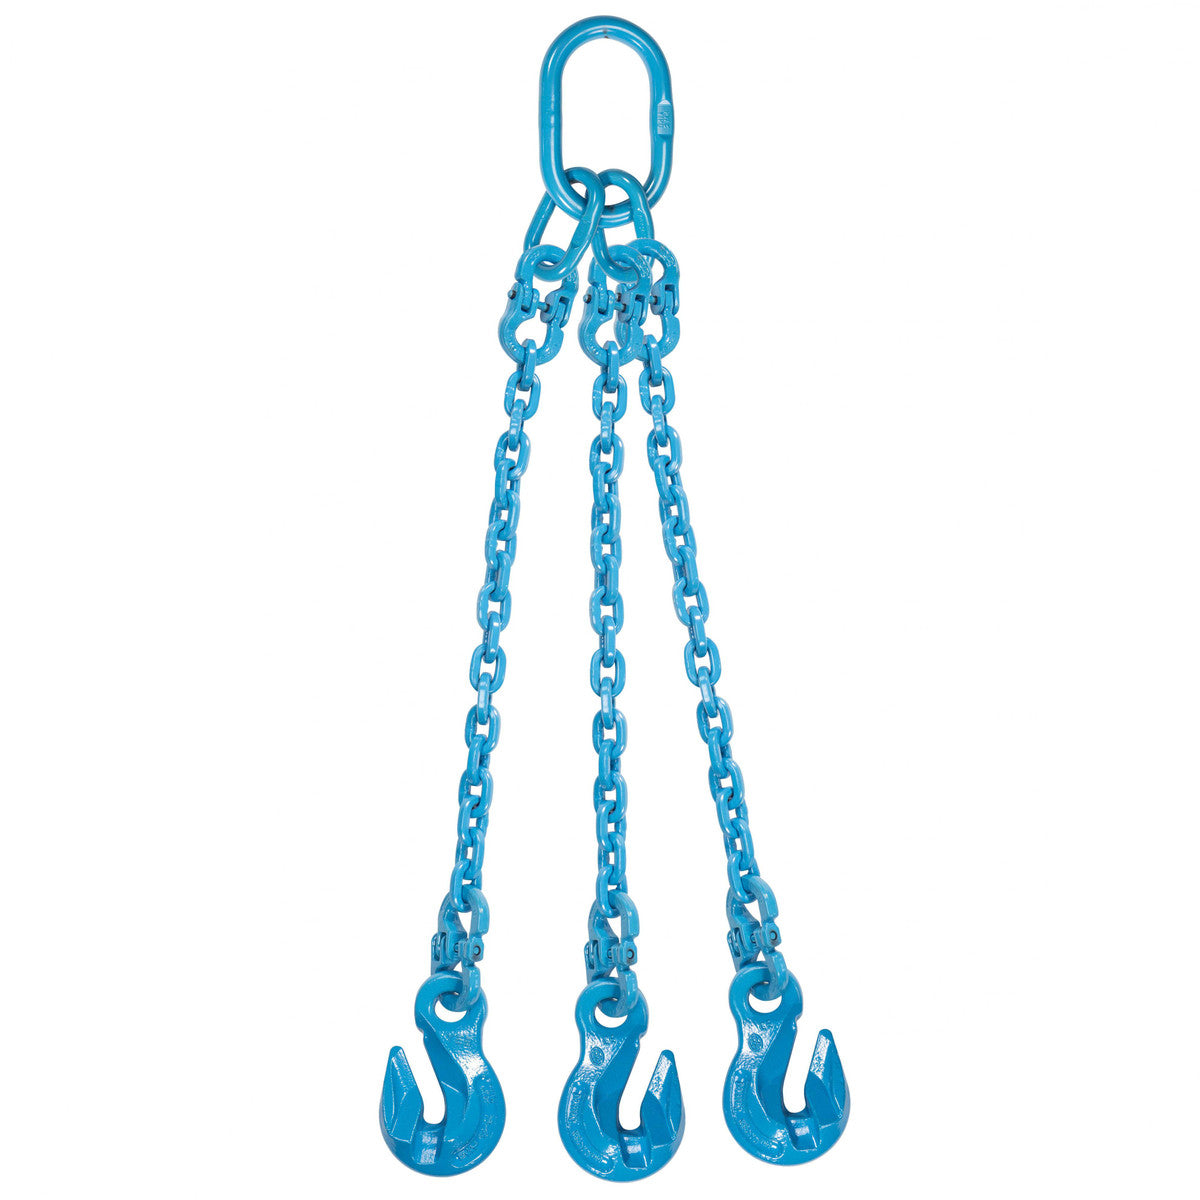 9/32" x 14' - Pewag 3 Leg Chain Sling w/ Grab Hooks - Grade 120